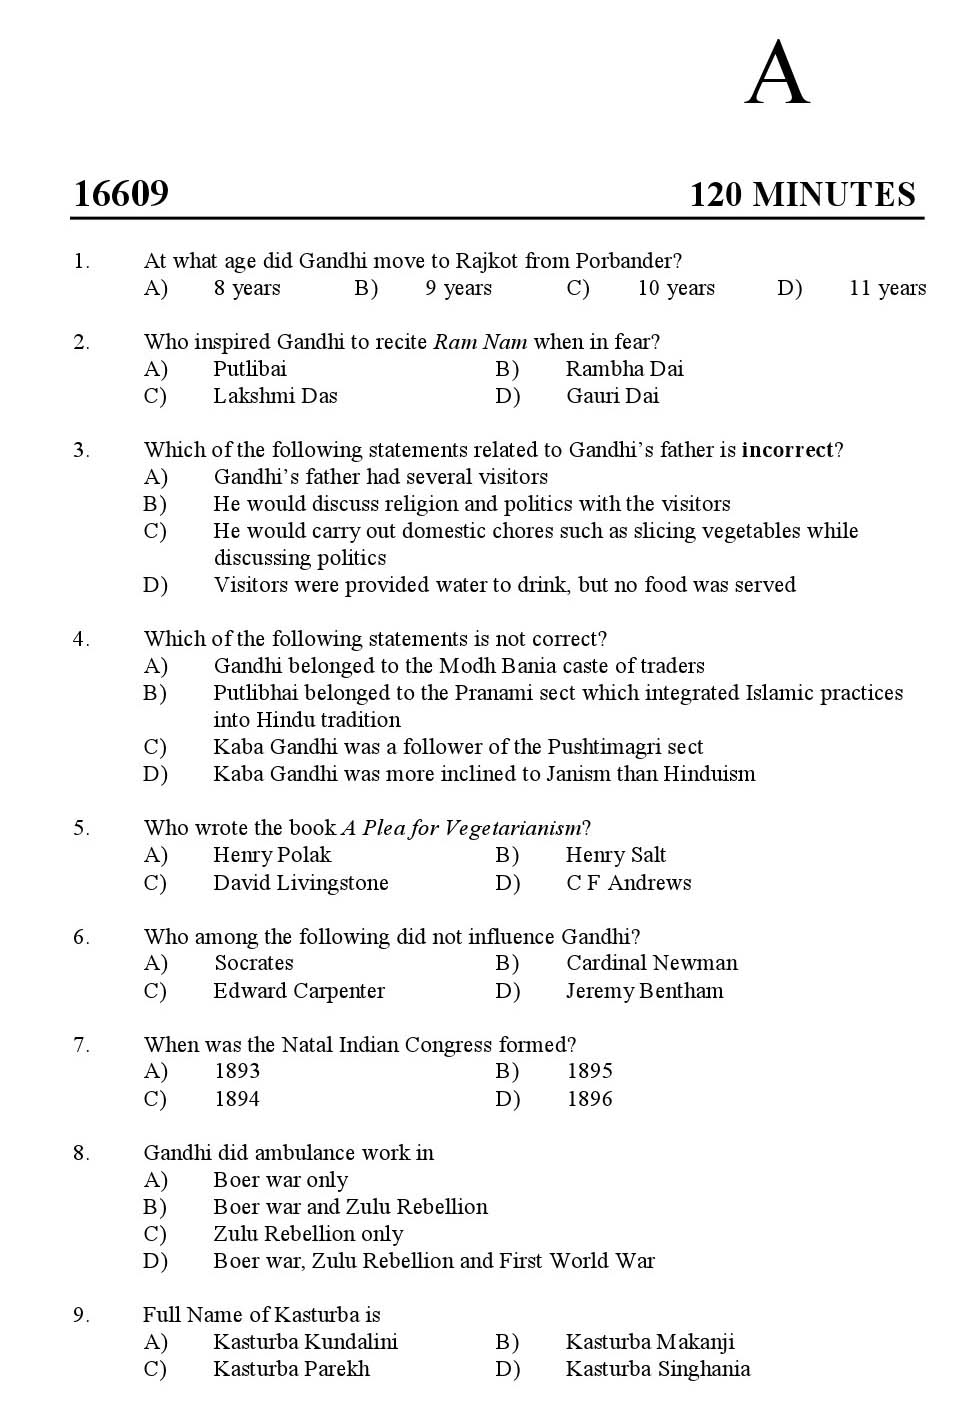 Kerala SET Gandhian Studies Exam 2016 Question Code 16609 A 1